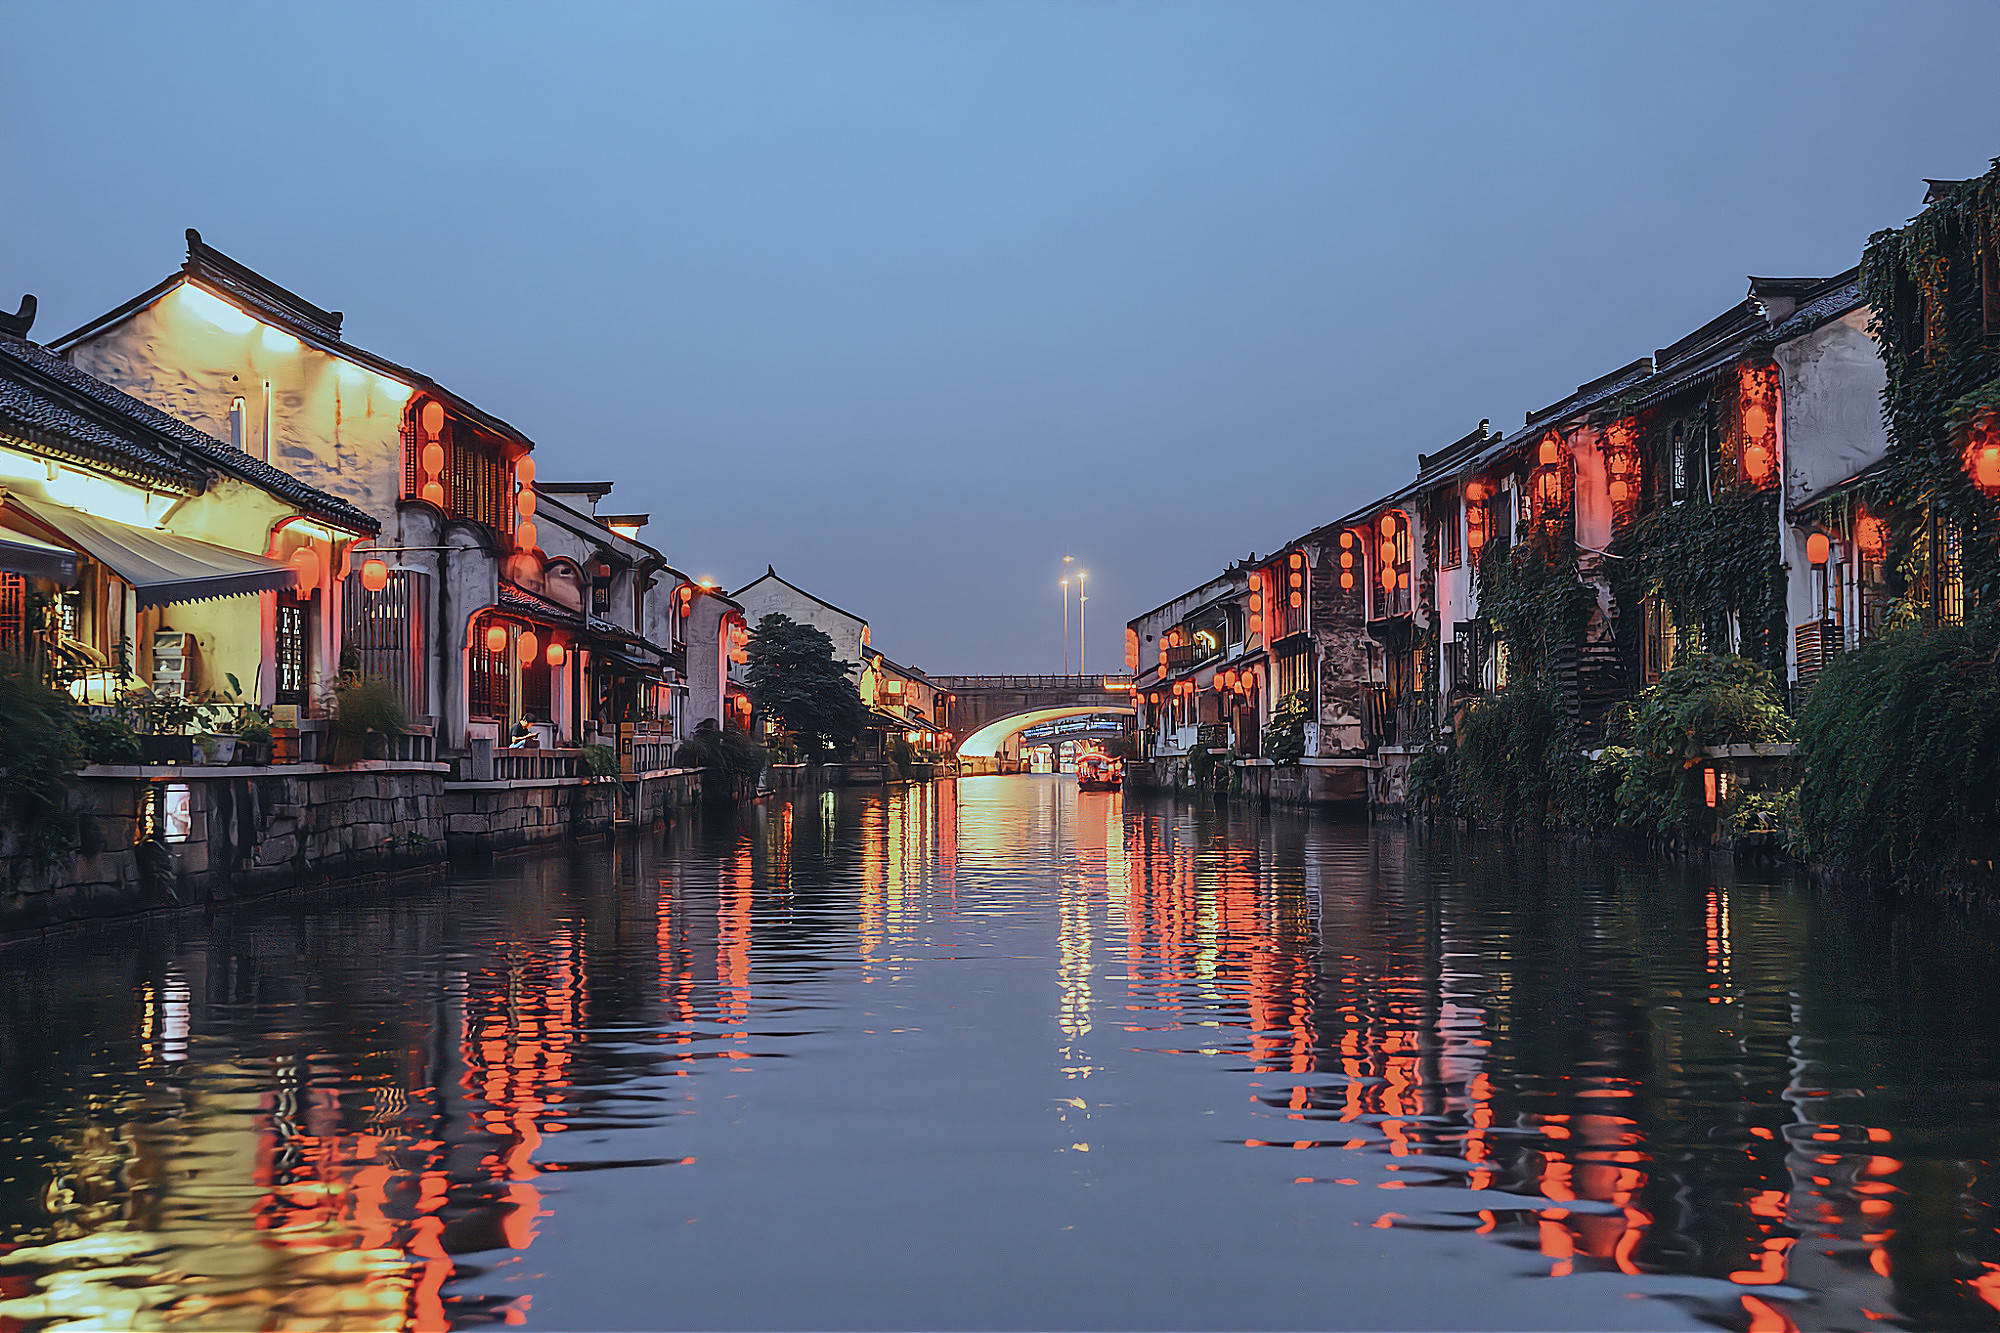 这是一幅古镇夜景图，古建筑沿河而建，灯光倒映在平静的水面上，远处有一座拱桥，营造出宁静和谐的氛围。